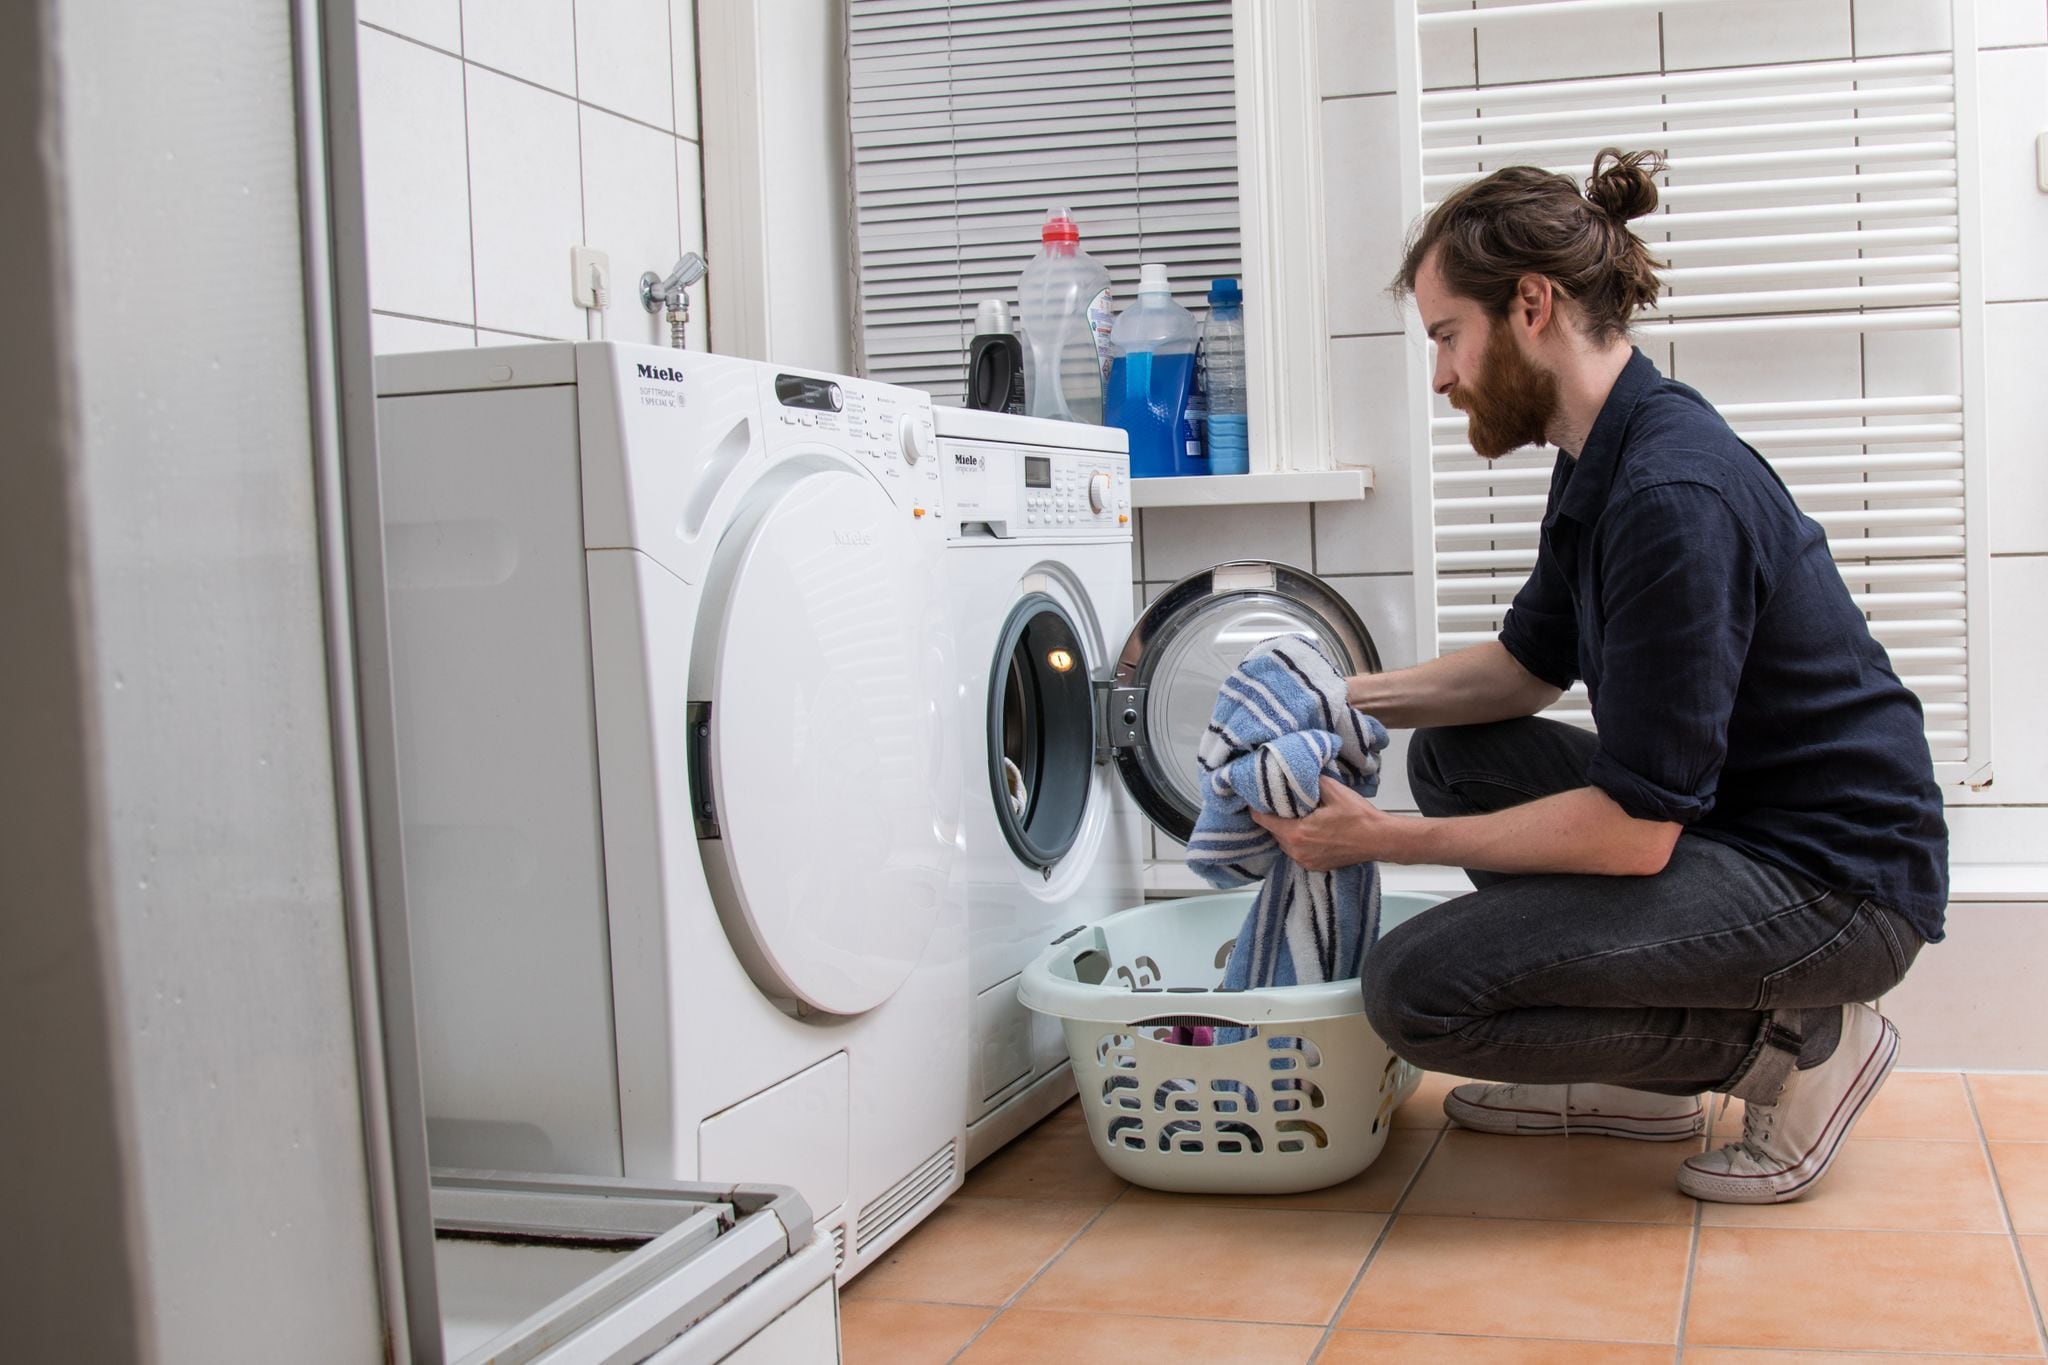 Las lavadoras figuran entre los equipos de uso doméstico con mayor demanda eléctrica. (Christin Klose/dpa)